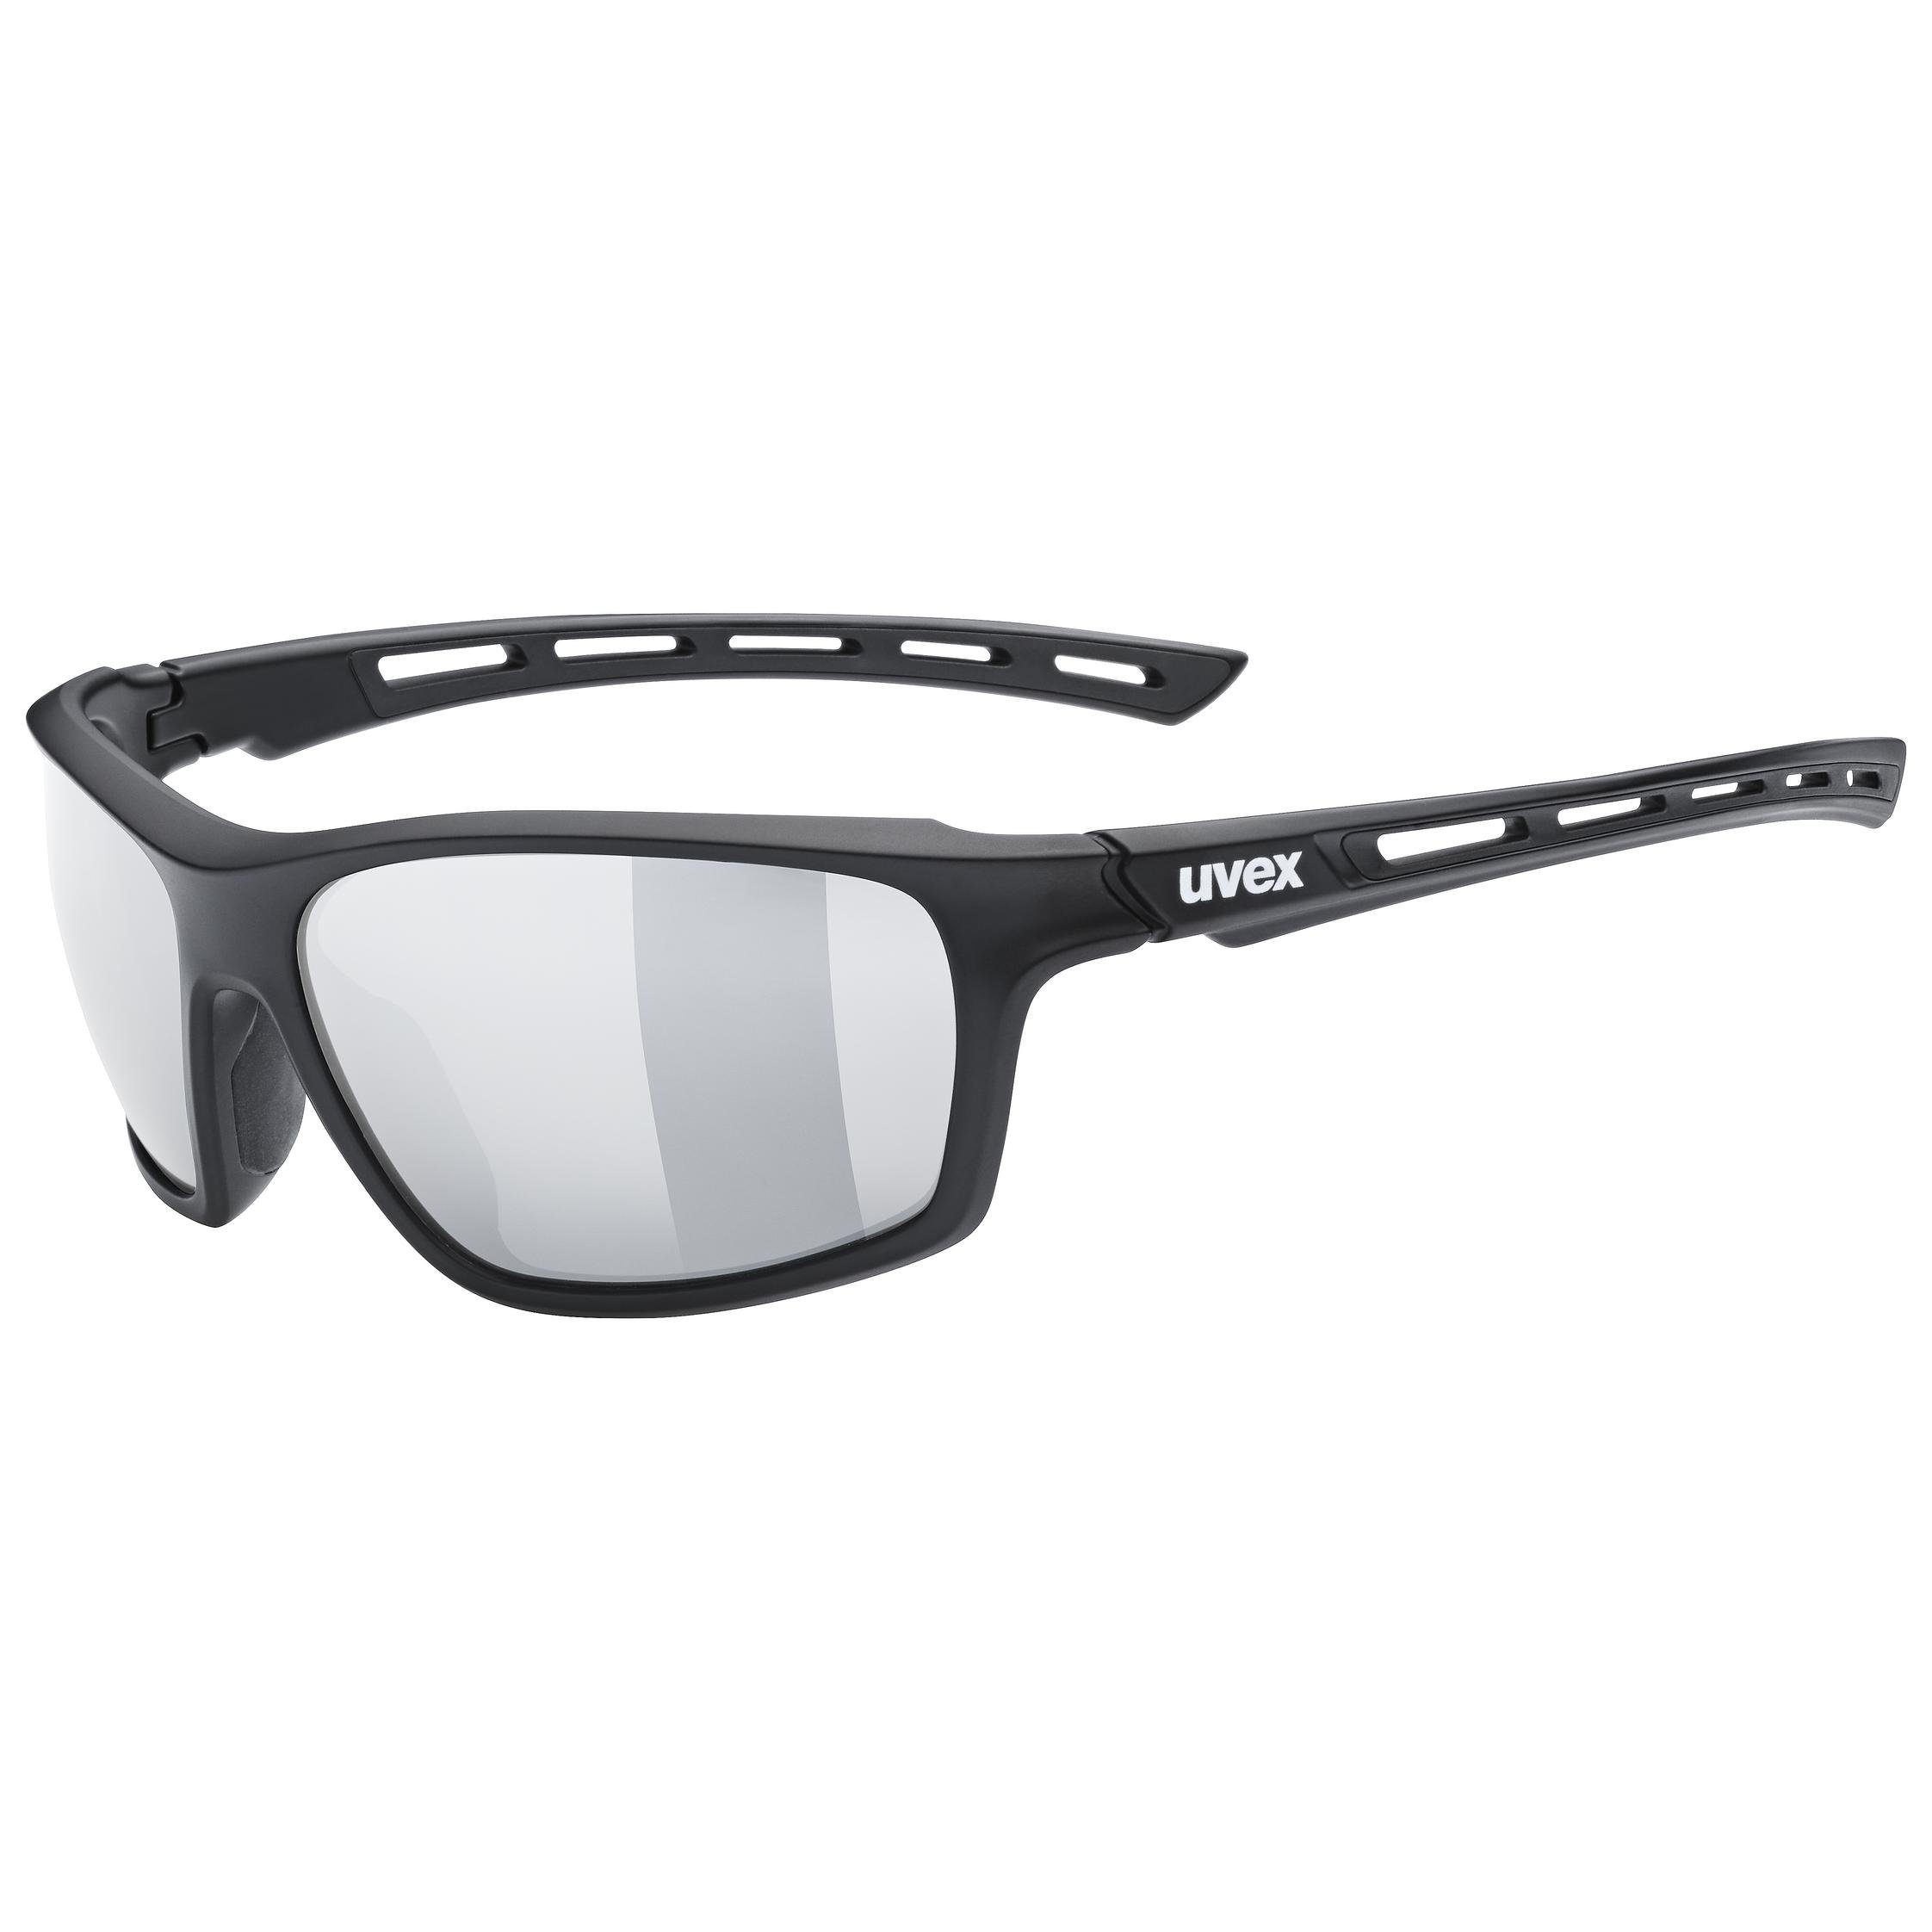 59,95 EUR UVEX gravic Fahrrad Sonnen Brille white black mit Wechselgläsern UVP 